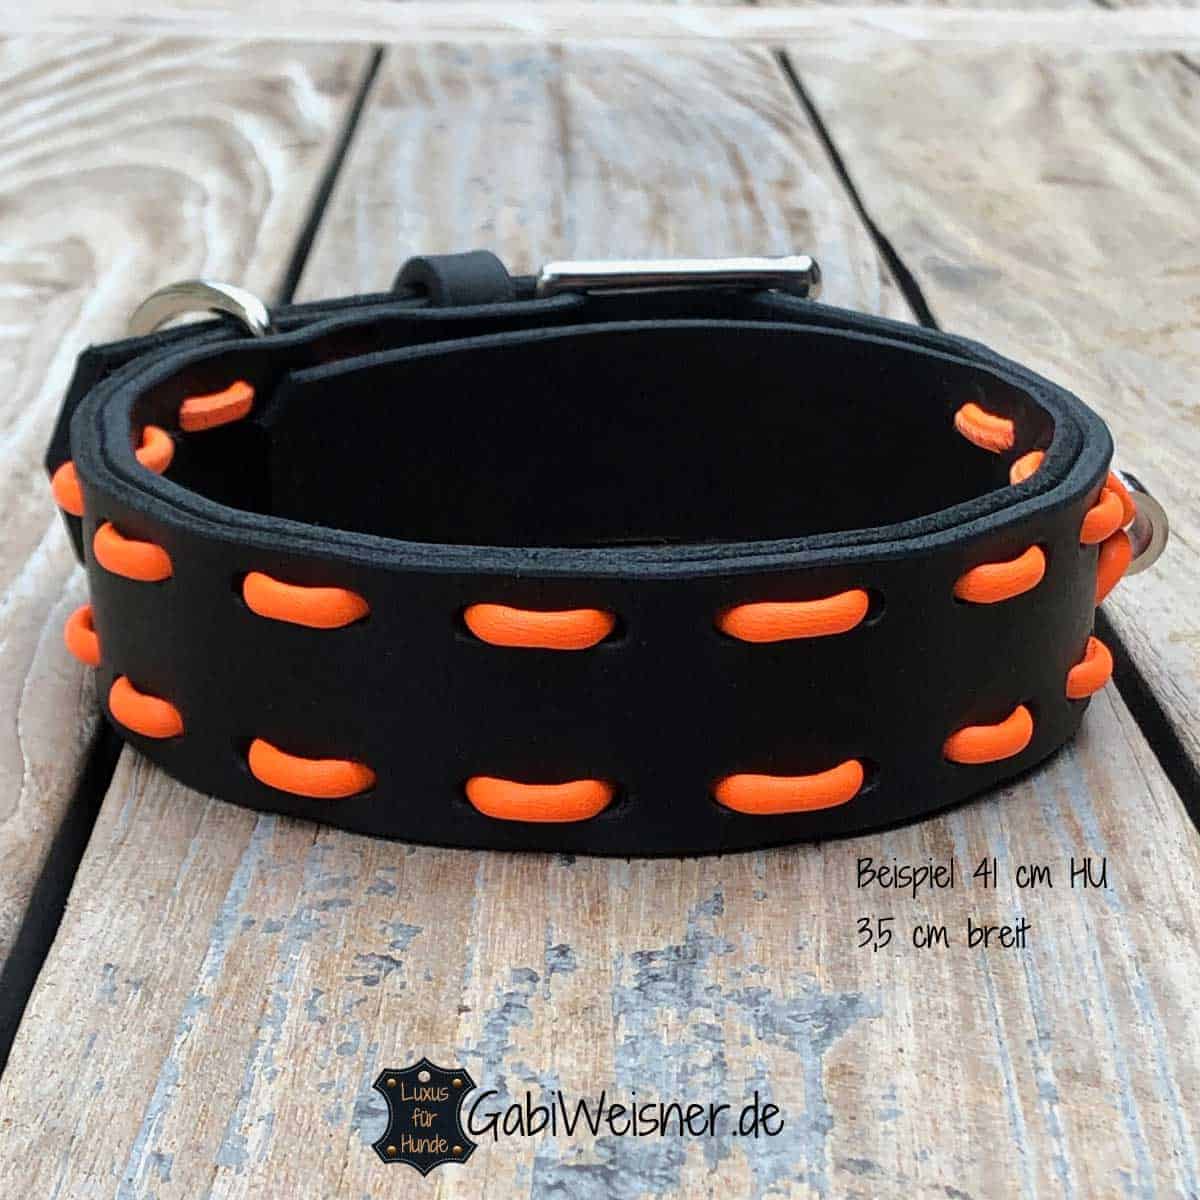 hundehalsband aus leder in schwarz orange.